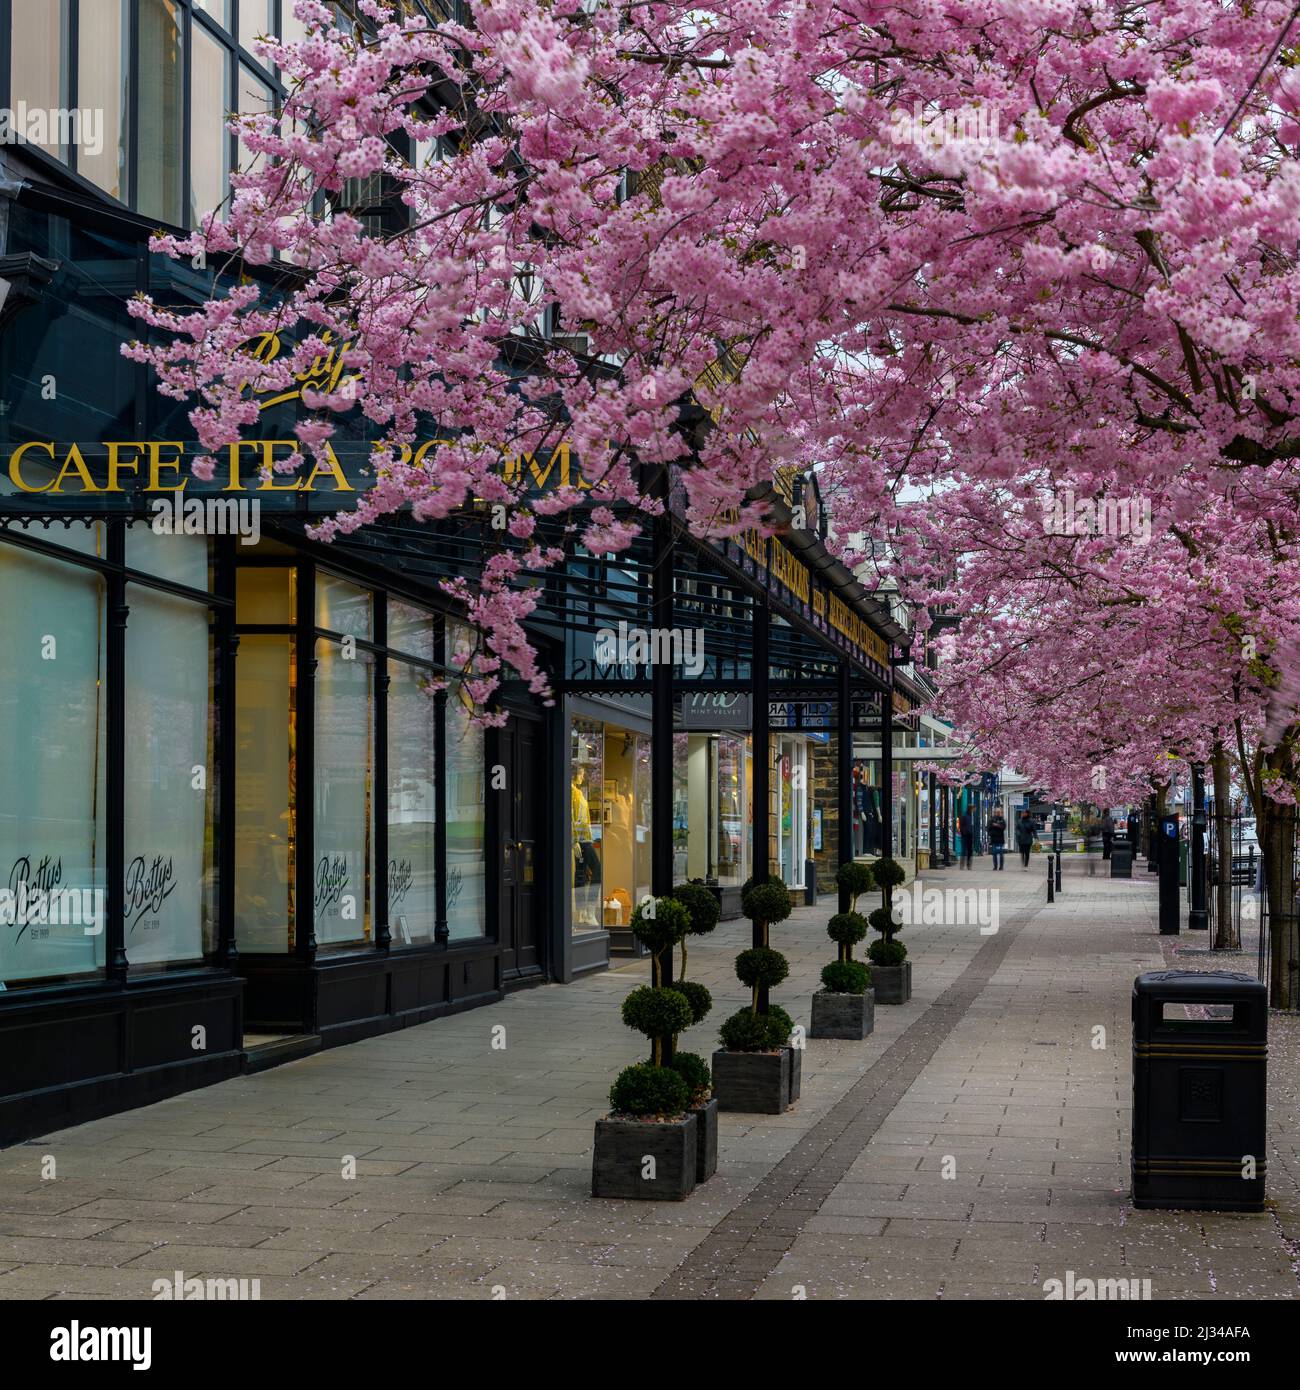 Centro storico di primavera (splendidi e colorati ciliegi in fiore, elegante ristorante-caffetteria di fronte al negozio) - The Grove, Ilkley, Yorkshire, Inghilterra, Regno Unito. Foto Stock